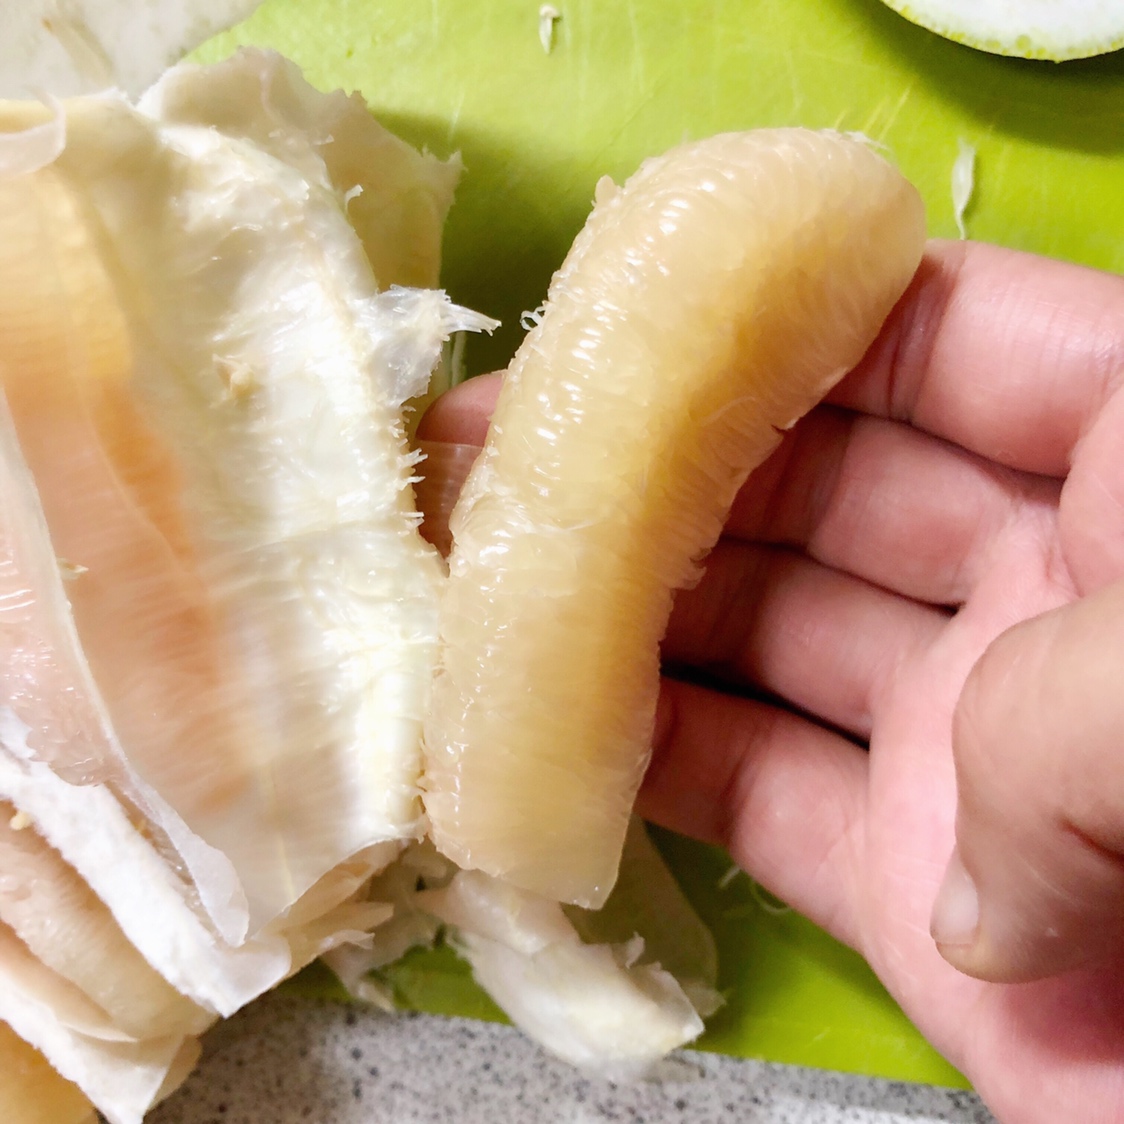 10分钟剥一个柚子的做法